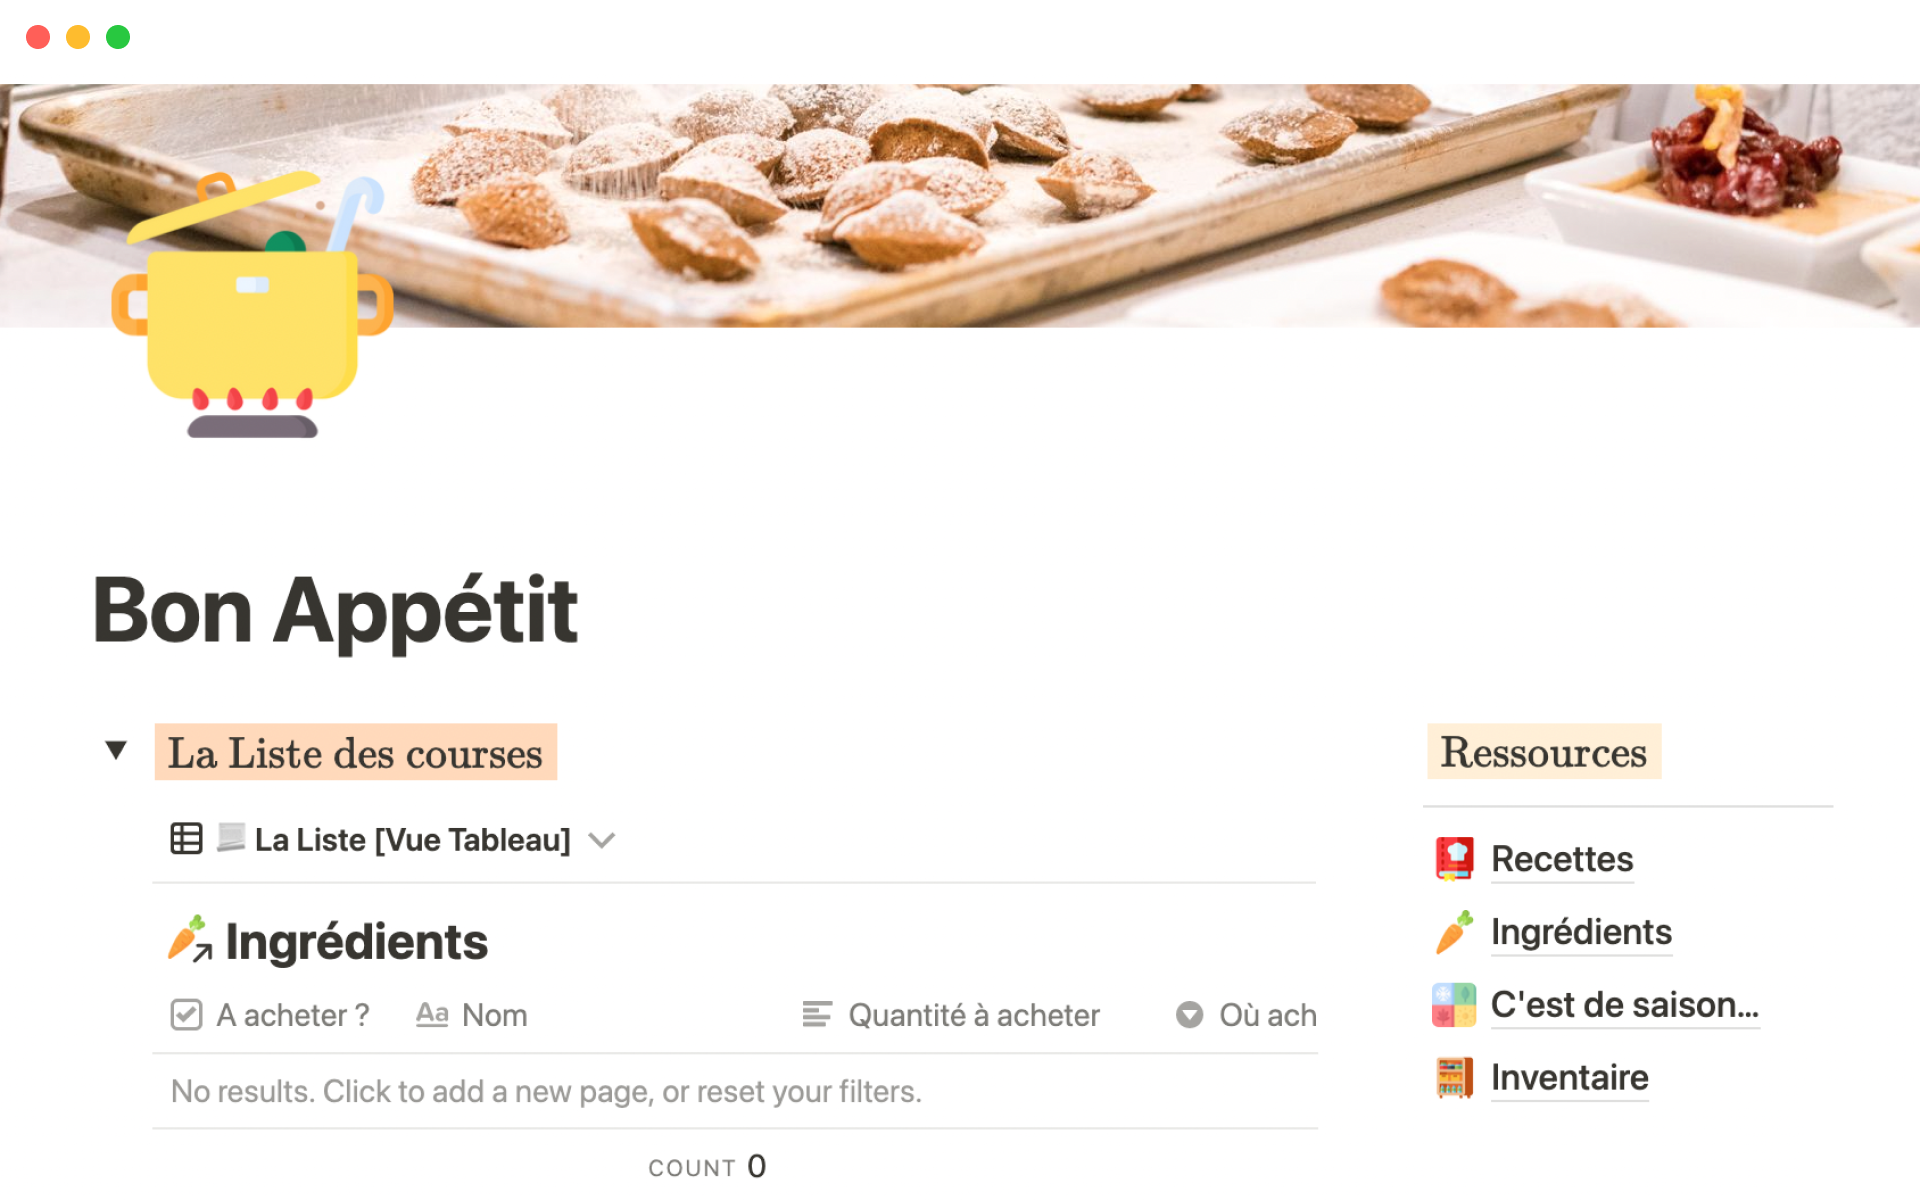 A template preview for Bon Appétit (Planification repas, course et recettes)